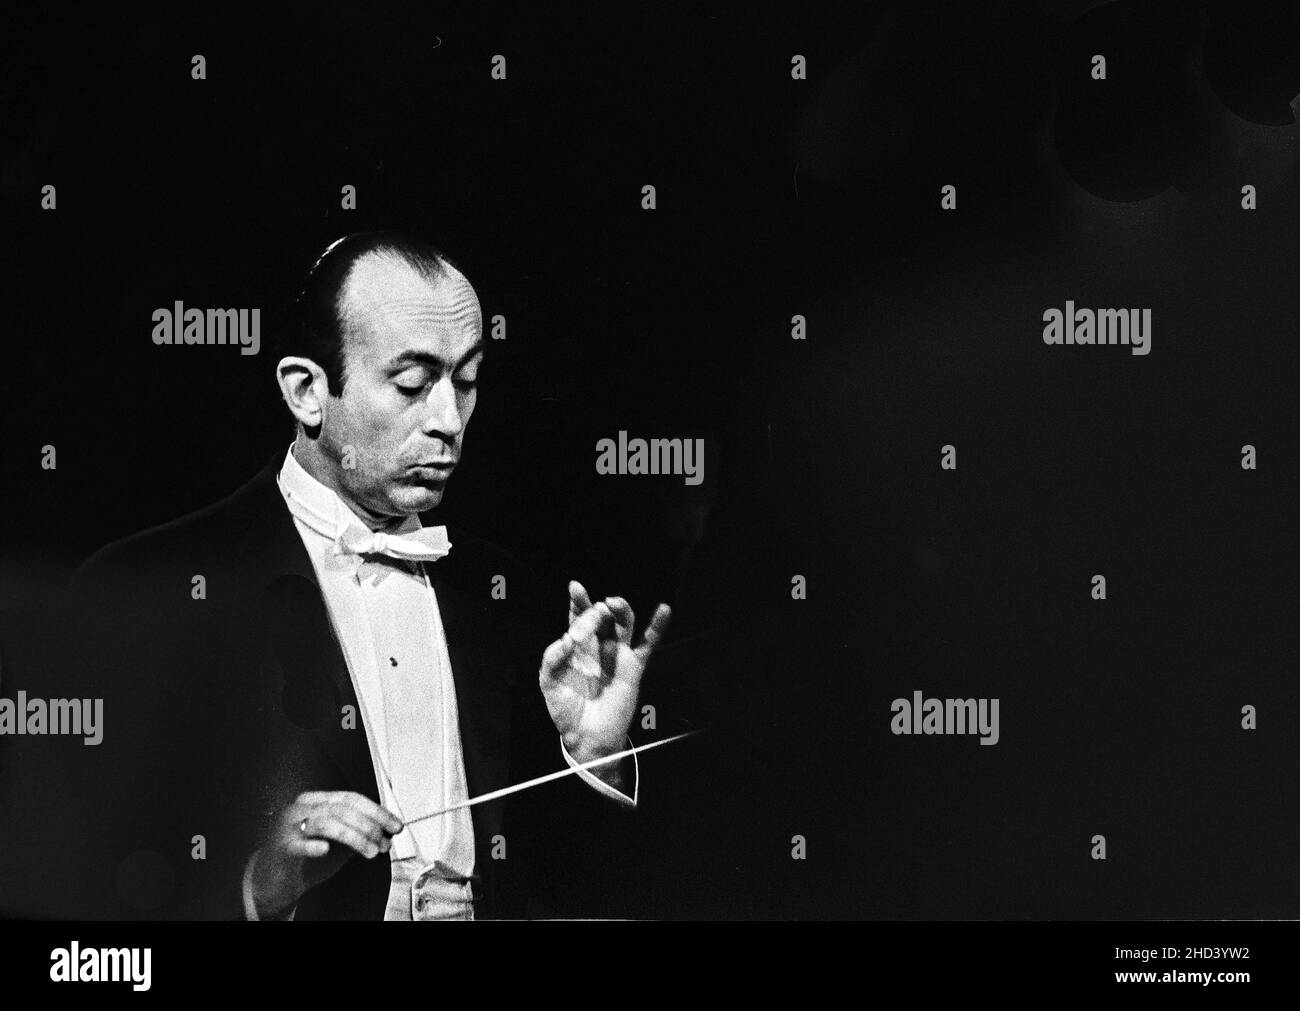 Le chef d'orchestre polonais Jan Krentz photographié lors d'une répétition à la télévision suédoise de stockholm. Photo : Bo Arrhed Banque D'Images